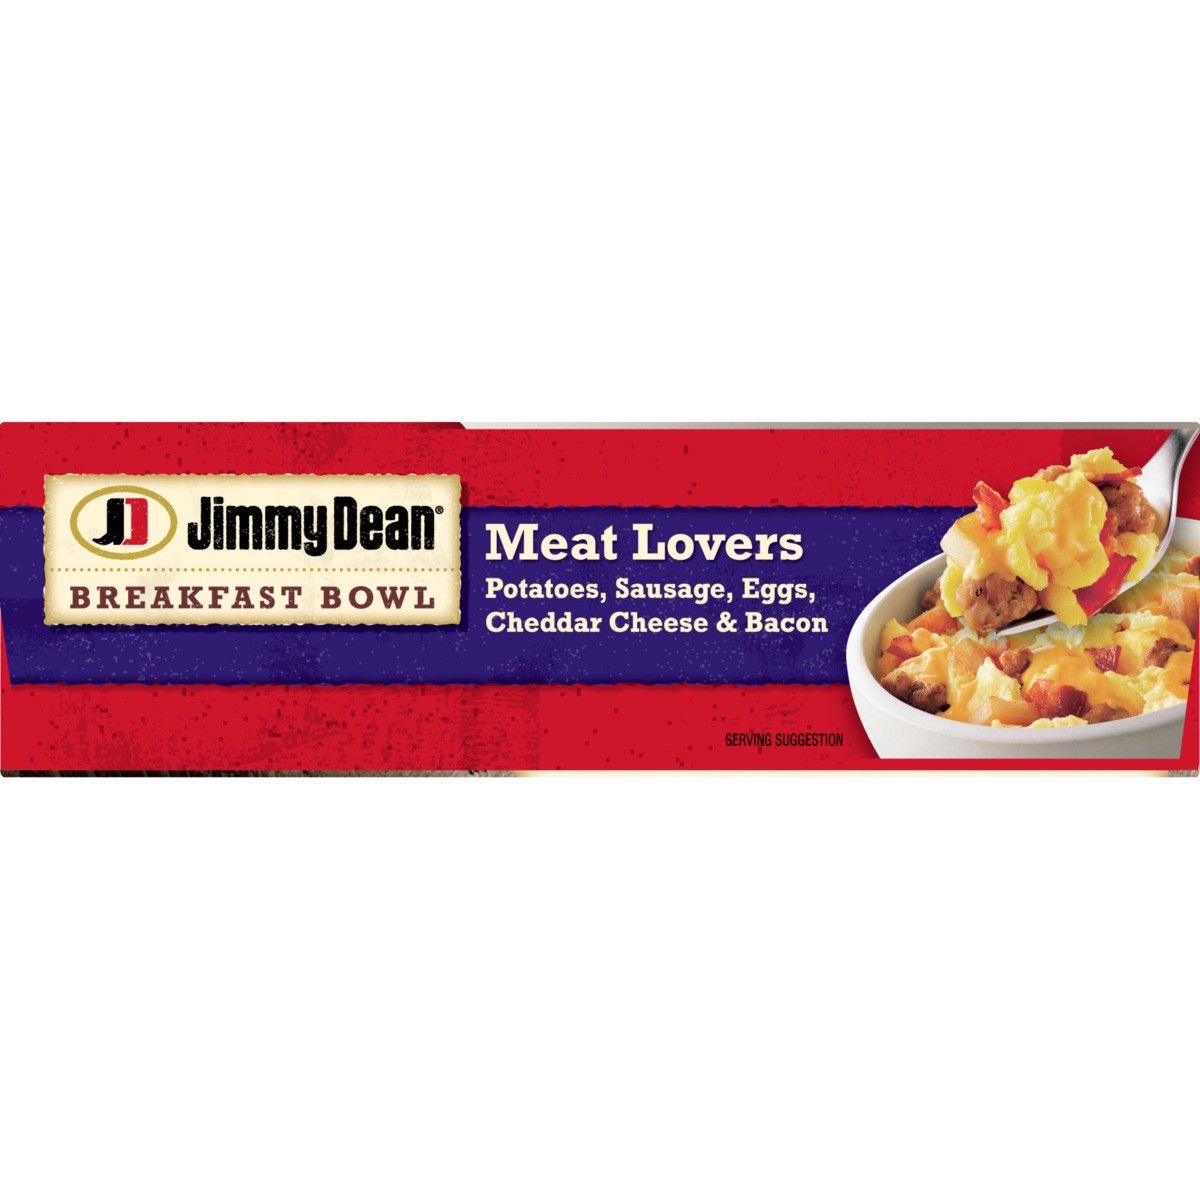 slide 4 of 9, Jimmy Dean Jmmy Dean Meat Lovers Bowl, 7 oz